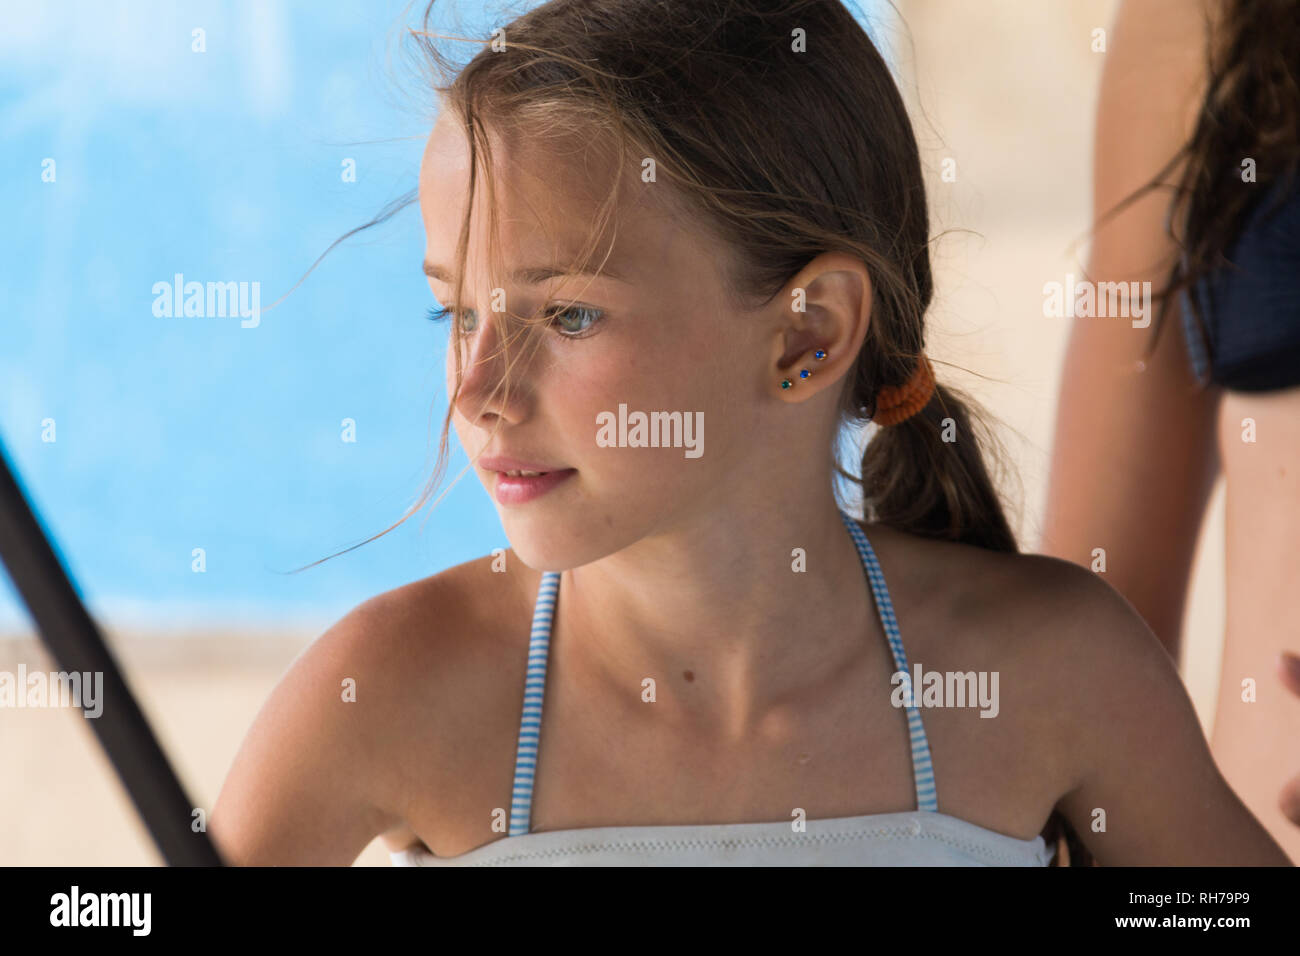 Madchen 12 jahre bikini -Fotos und -Bildmaterial in hoher Auflösung – Alamy